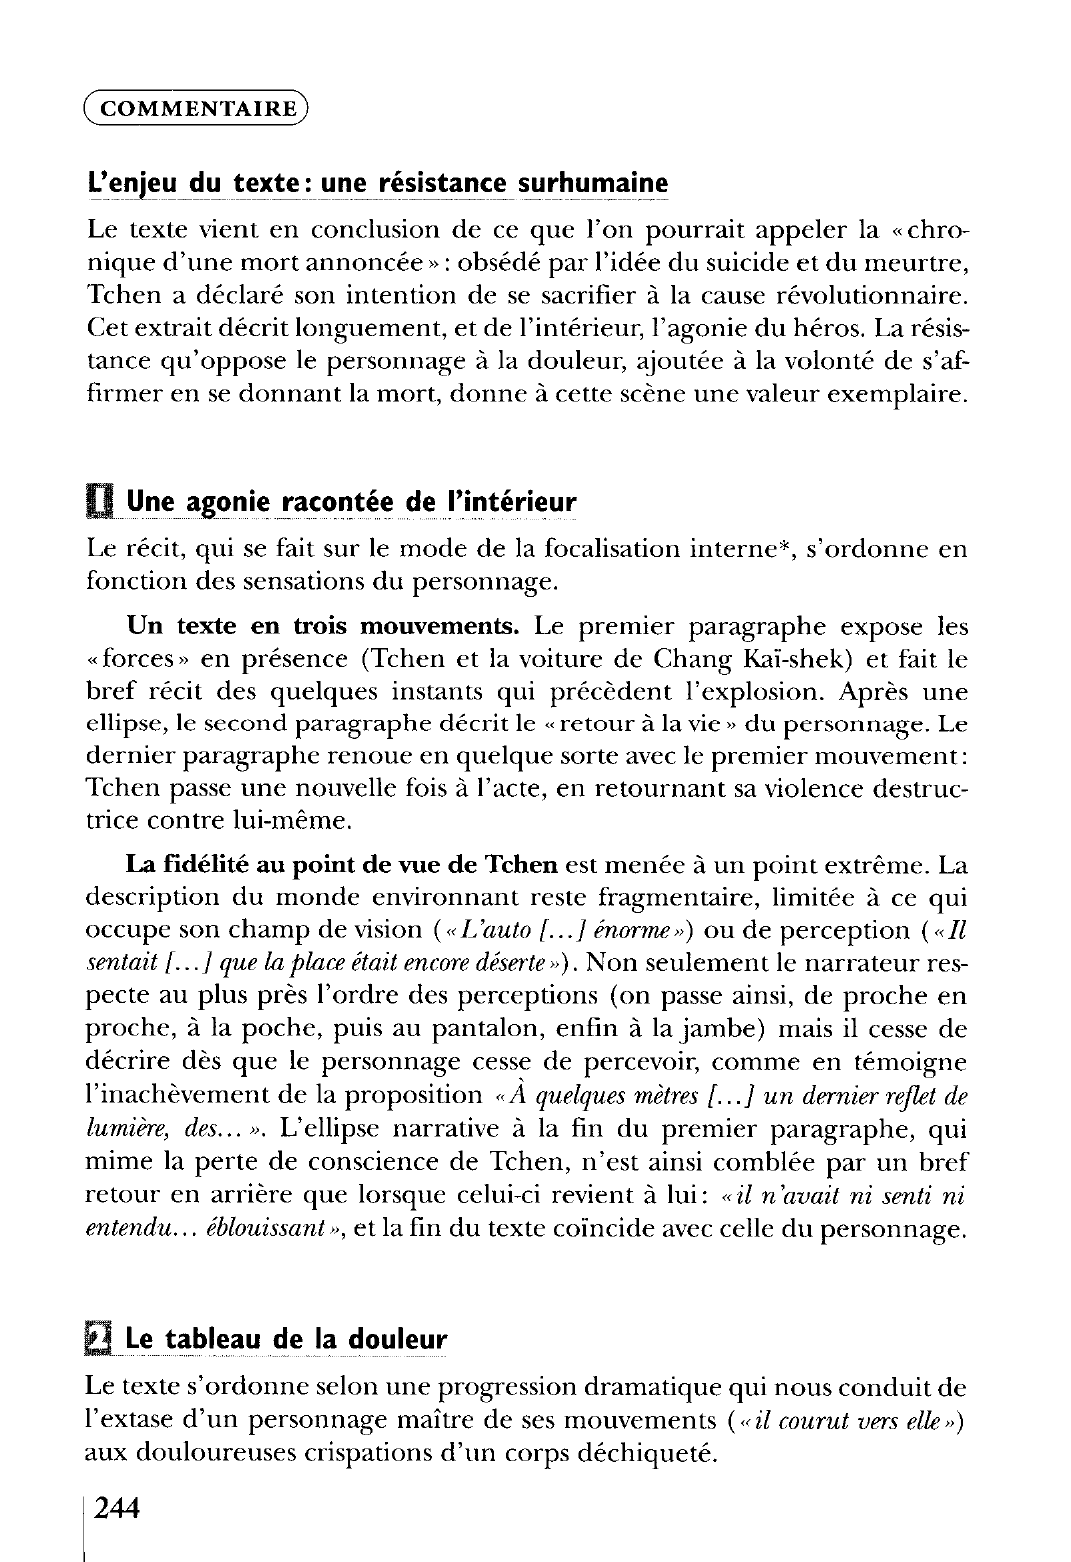 Prévisualisation du document La Condition humaine (2)  La Condition humaine, IV, « I I avril », Folio (Gallimard), pp. 235-236.